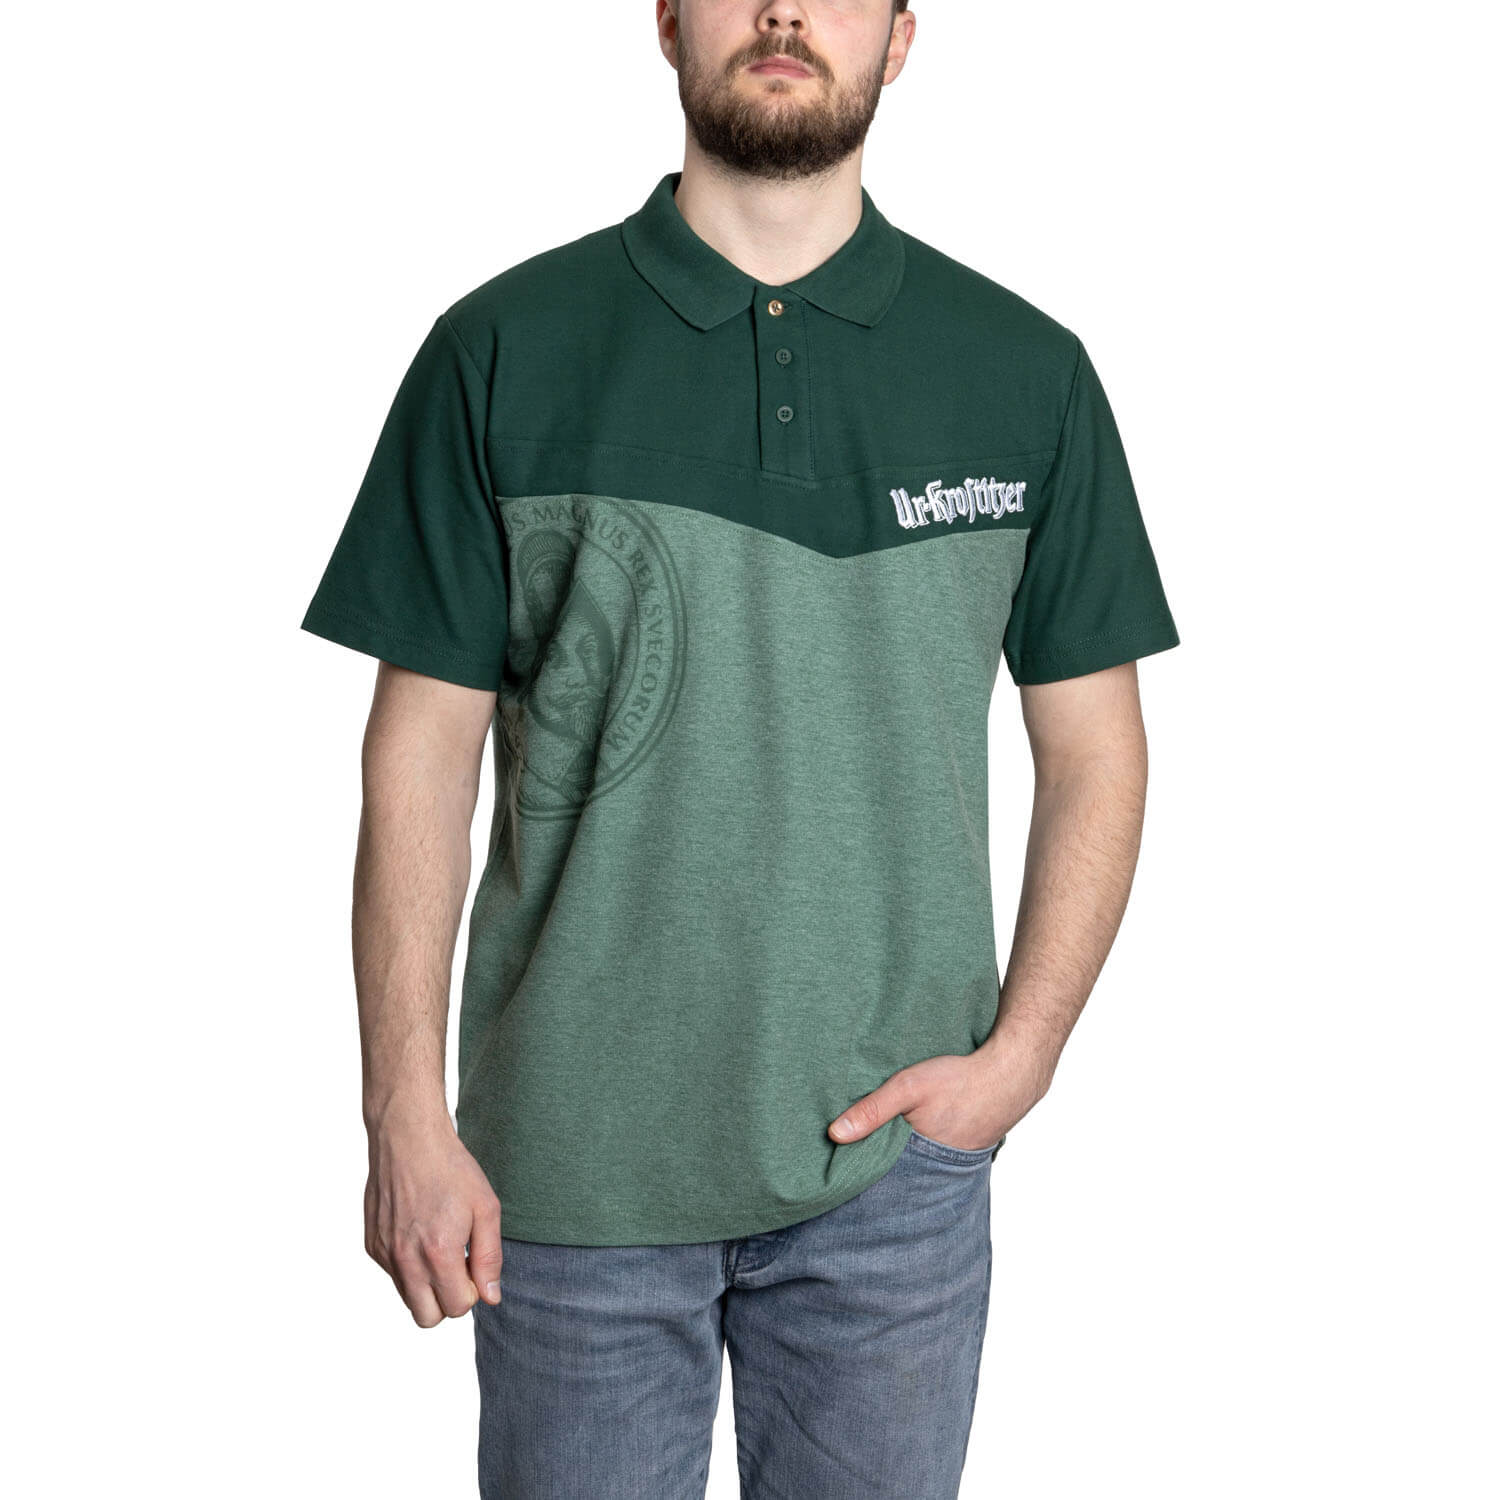 Ur-Krostitzer Green Edition Polo-Shirt Herren